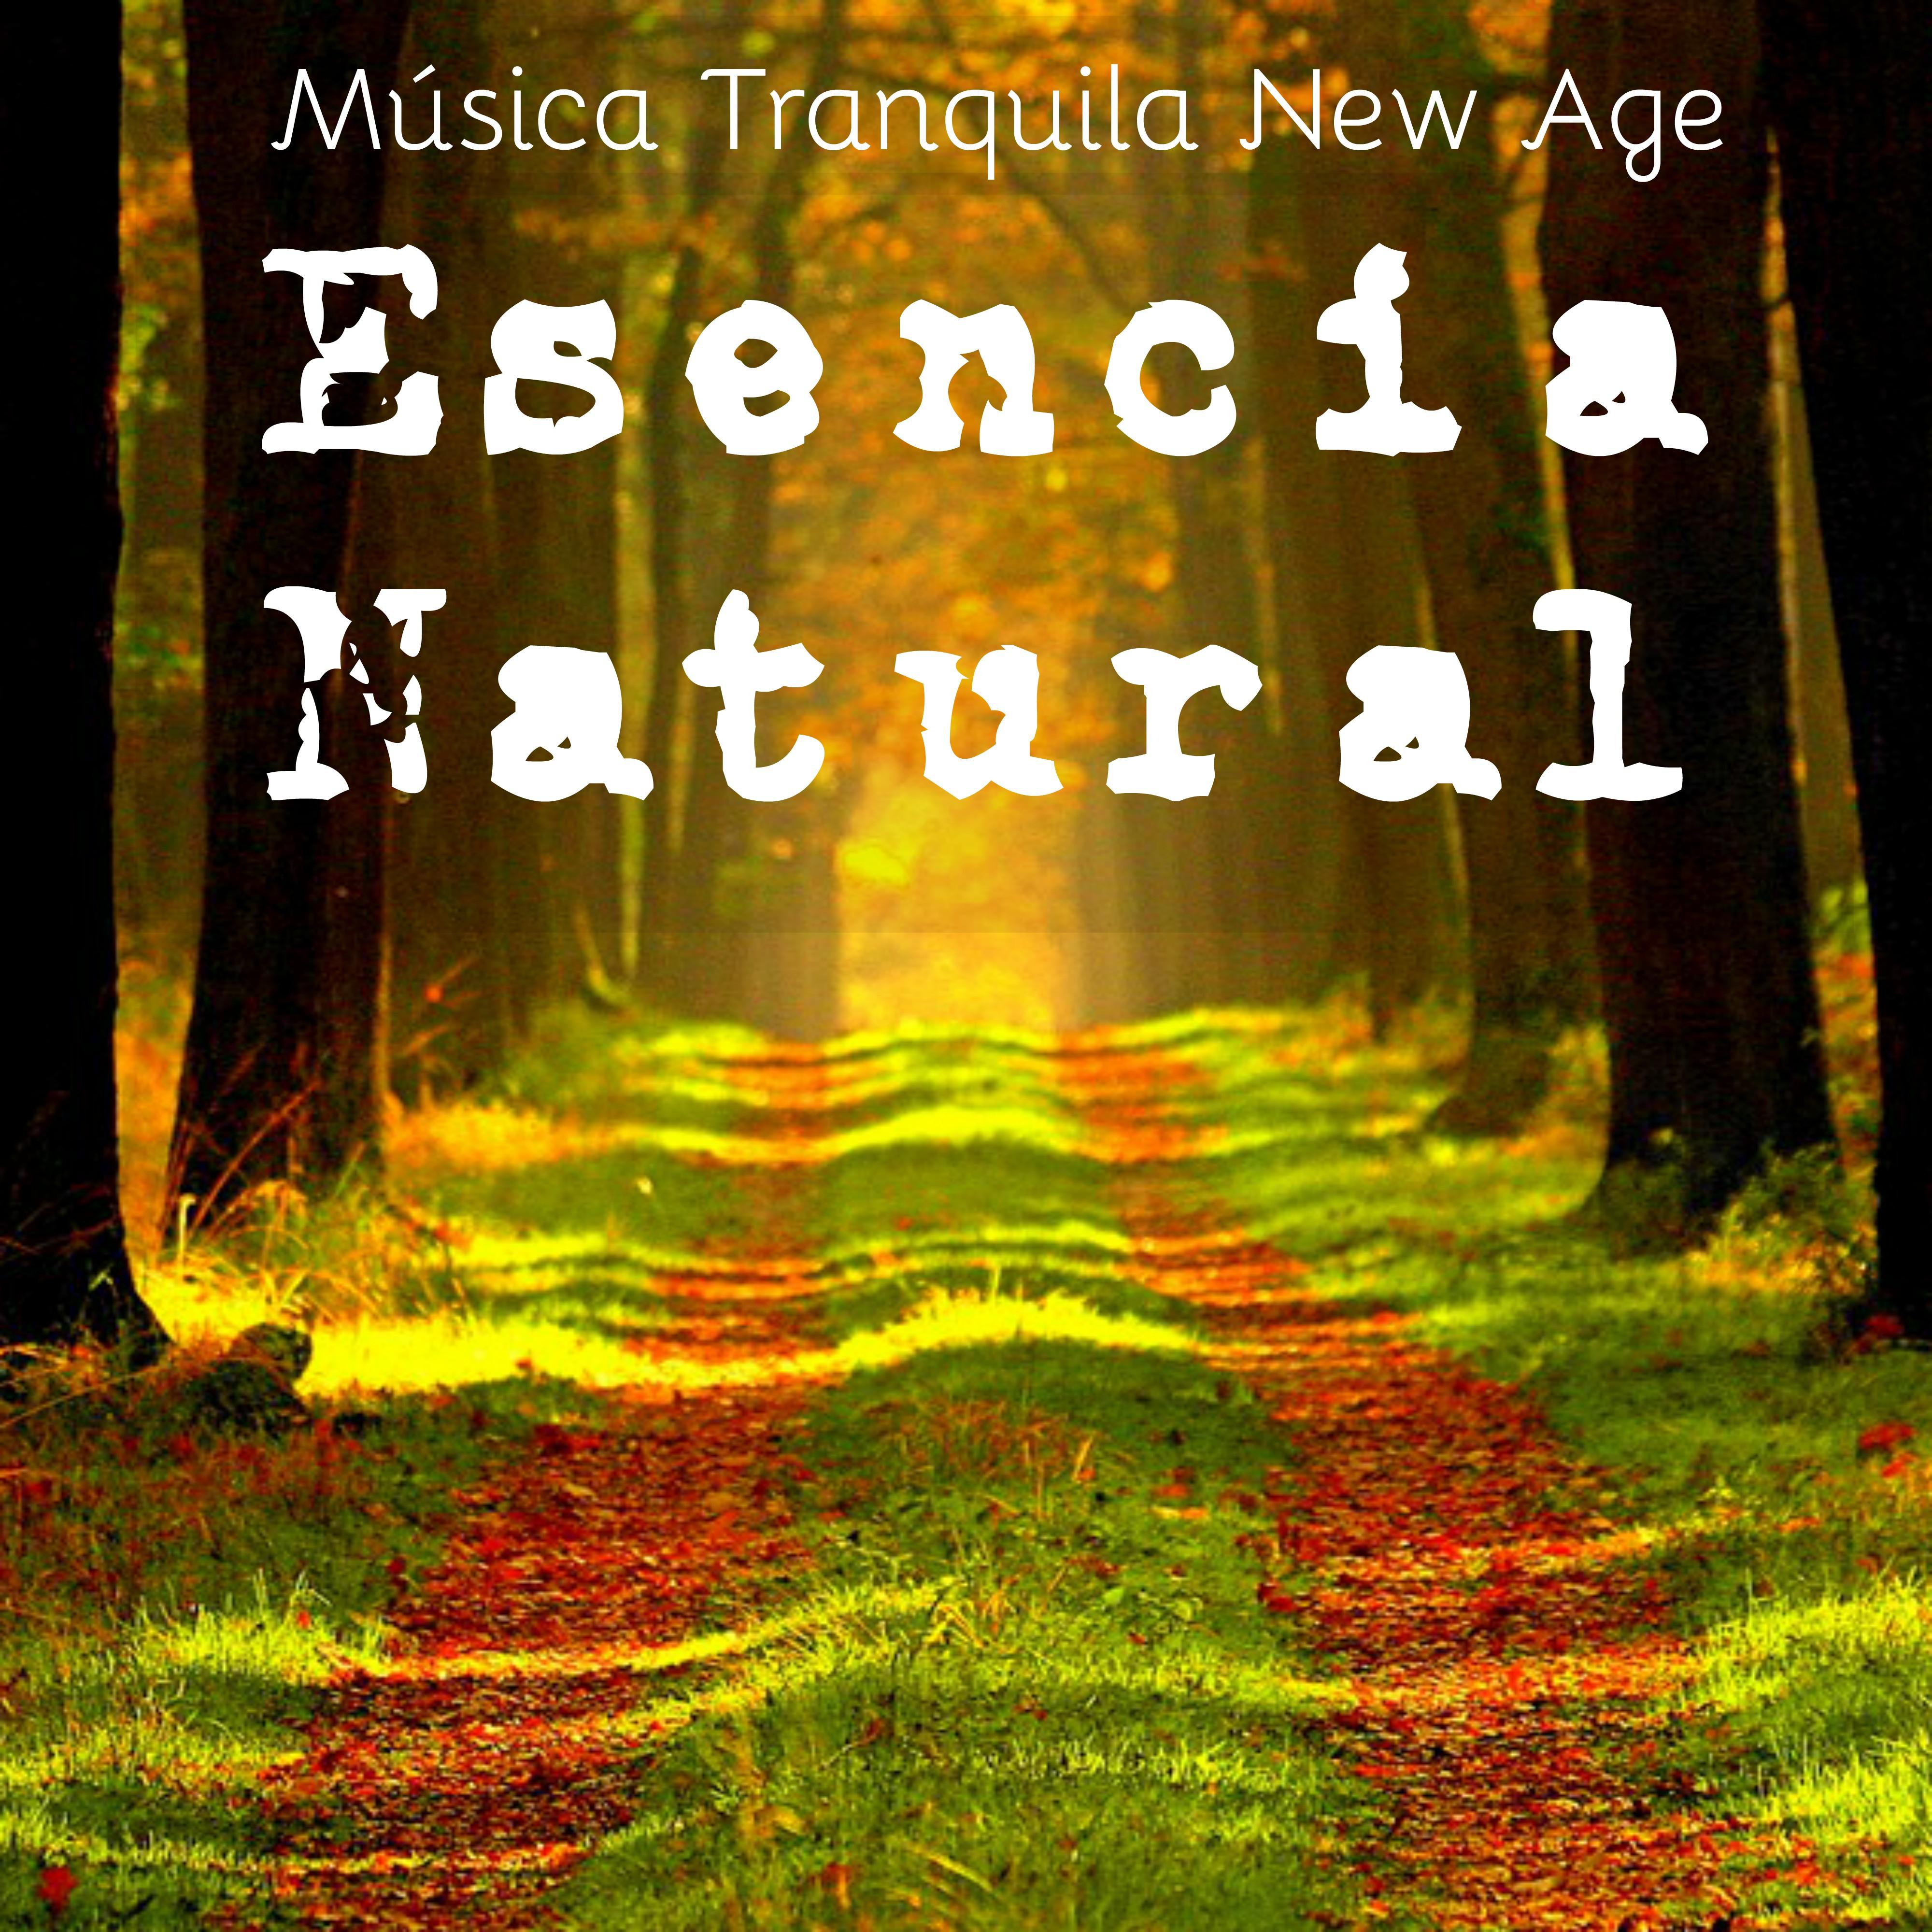 Esencia Natural - Música Tranquila New Age para Dormir Sanar el Alma Entrenamiento de la Mente con Sonidos Naturales Instrumentales Relajantes